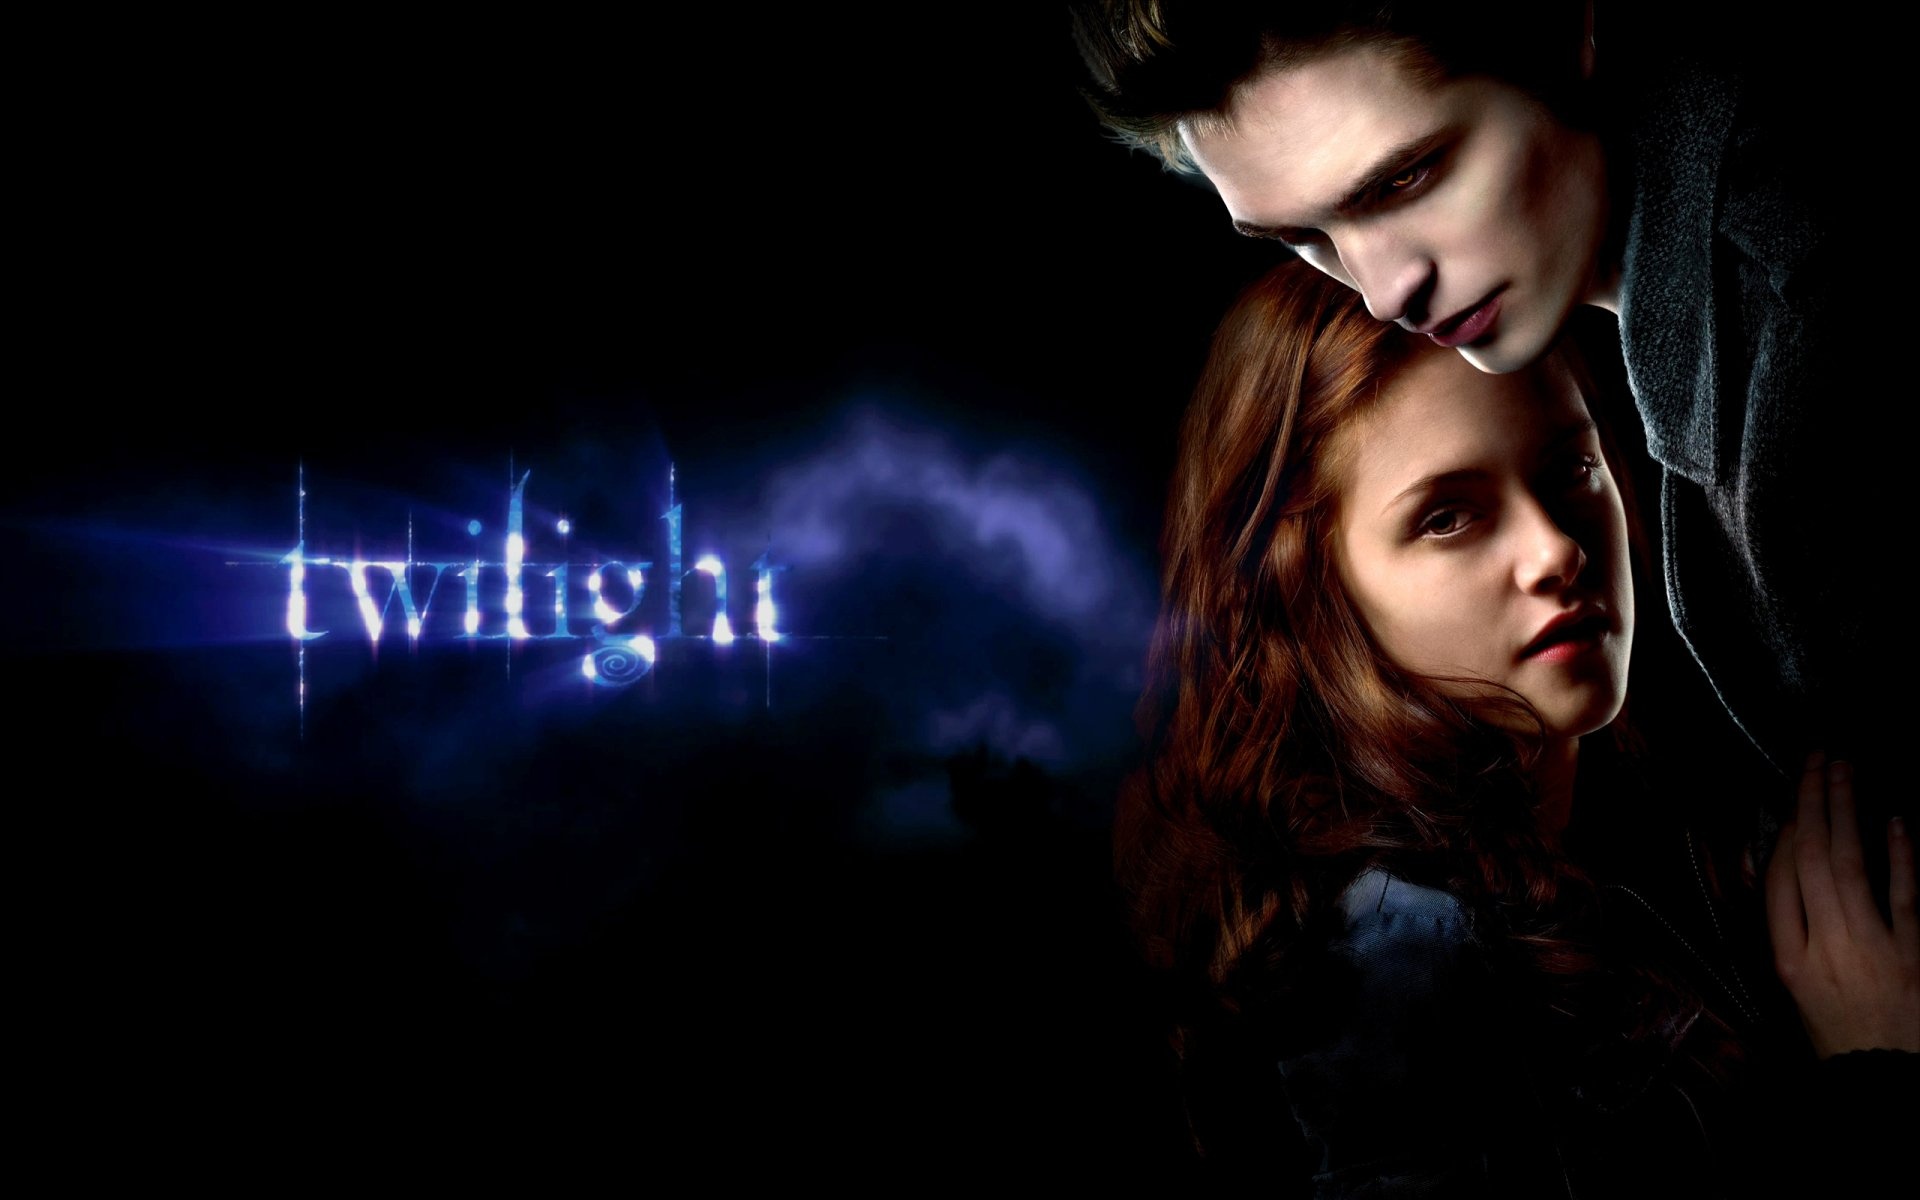 Edward Cullen, Bella Swan, Twilight wallpapers, Twilight series, 1920x1200 HD Desktop